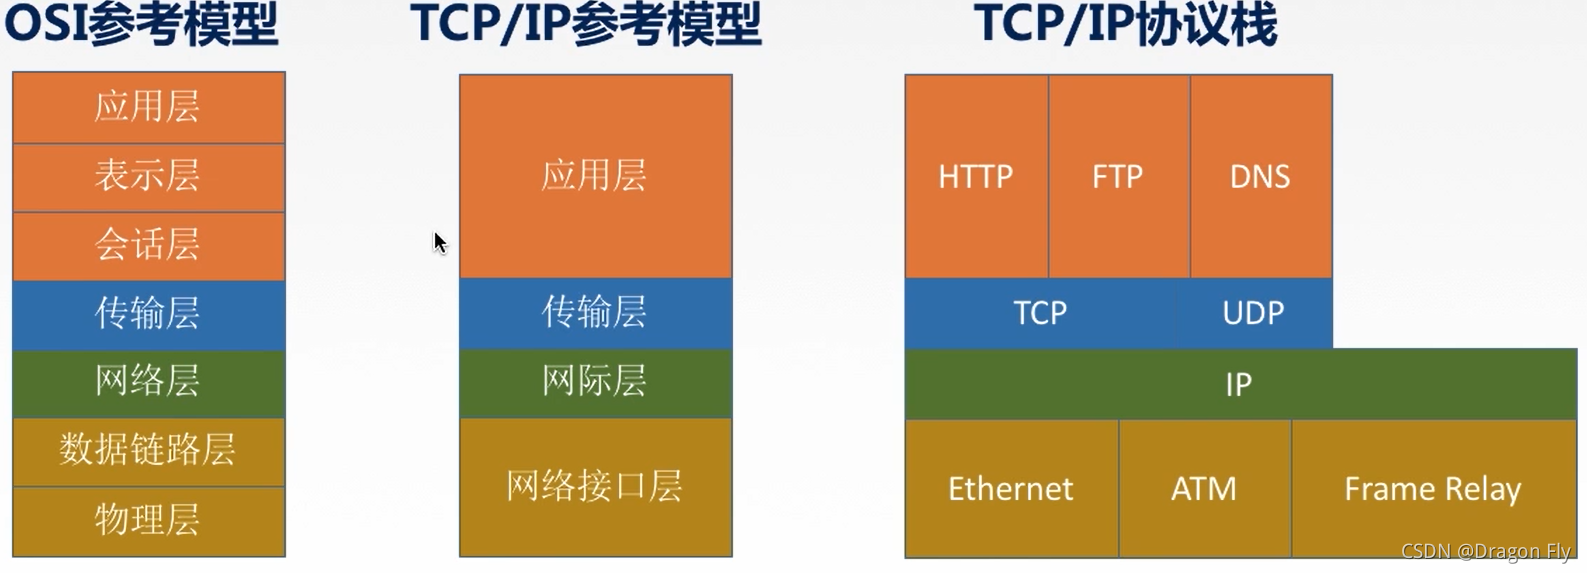 六、TCP/IP模型 和 5层参考模型